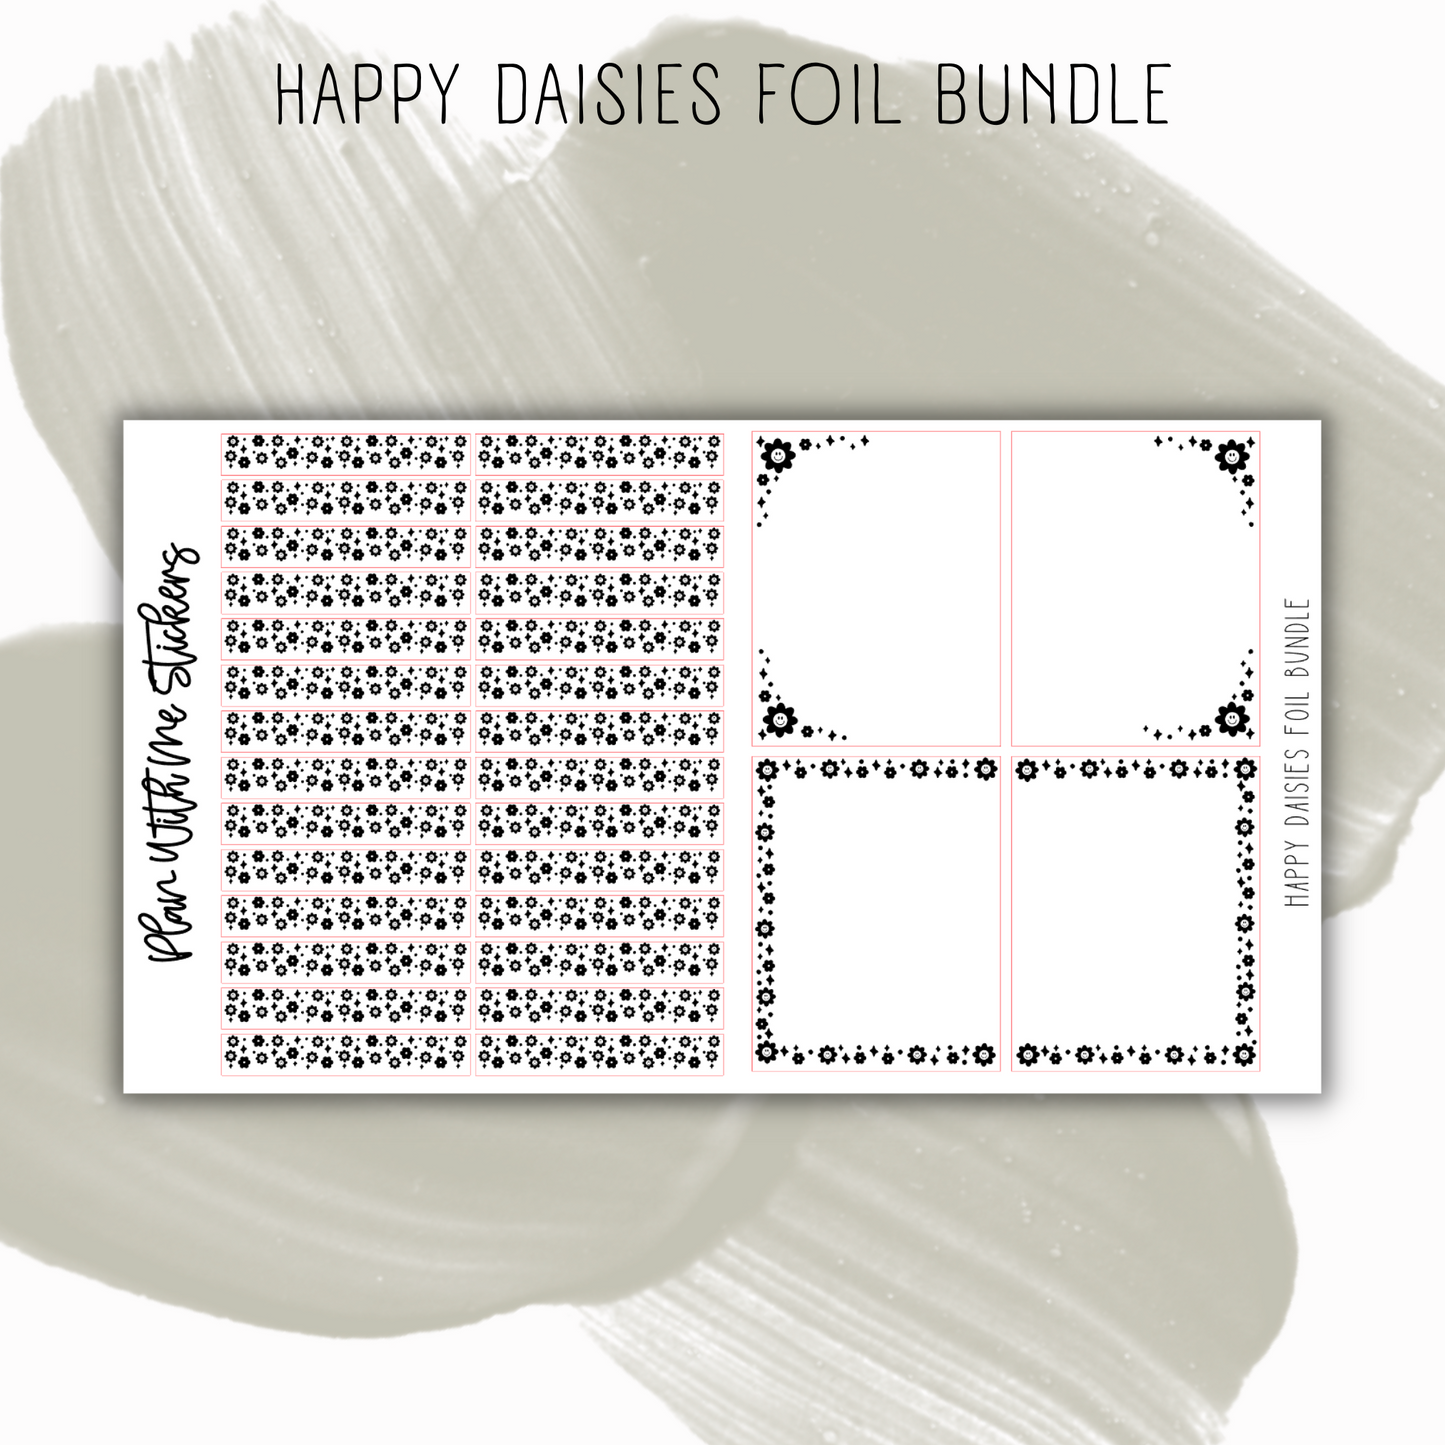 Happy Daisies Foil Bundle